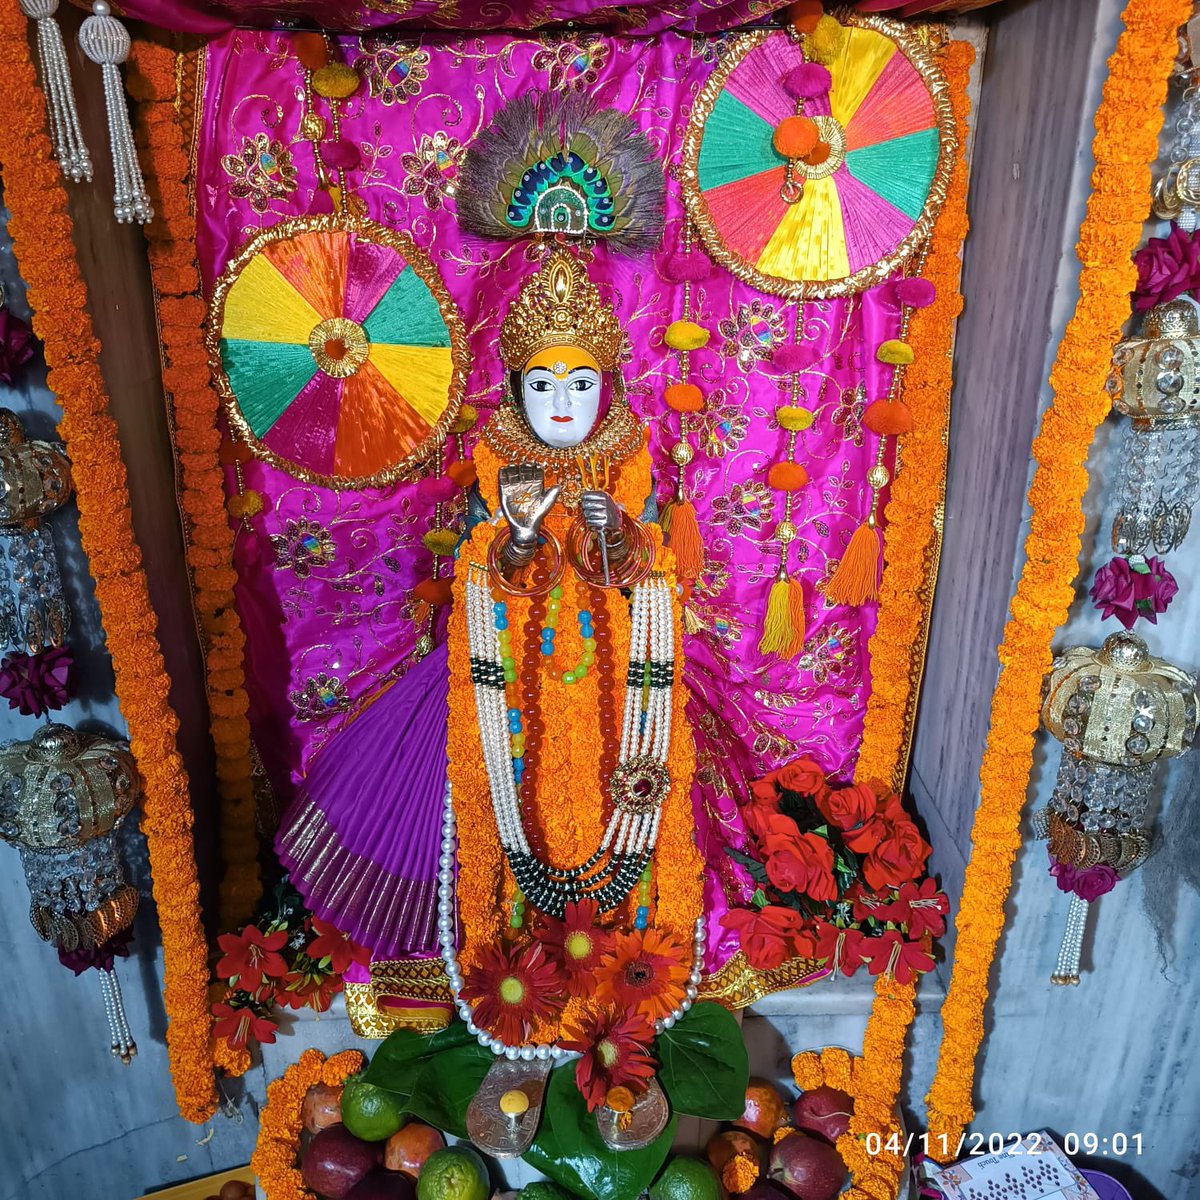 जय माता दी
आदि शक्ति माँ झण्डेवाली देवी जी के आज 04 नवम्बर 2022, शुक्रवार प्रातः काल 9:00 बजे के श्रृंगार दर्शन.🙏🏻🙏🏻🙏🏻#TulsiVivah #tulsivivaah #devuthaniekadashi